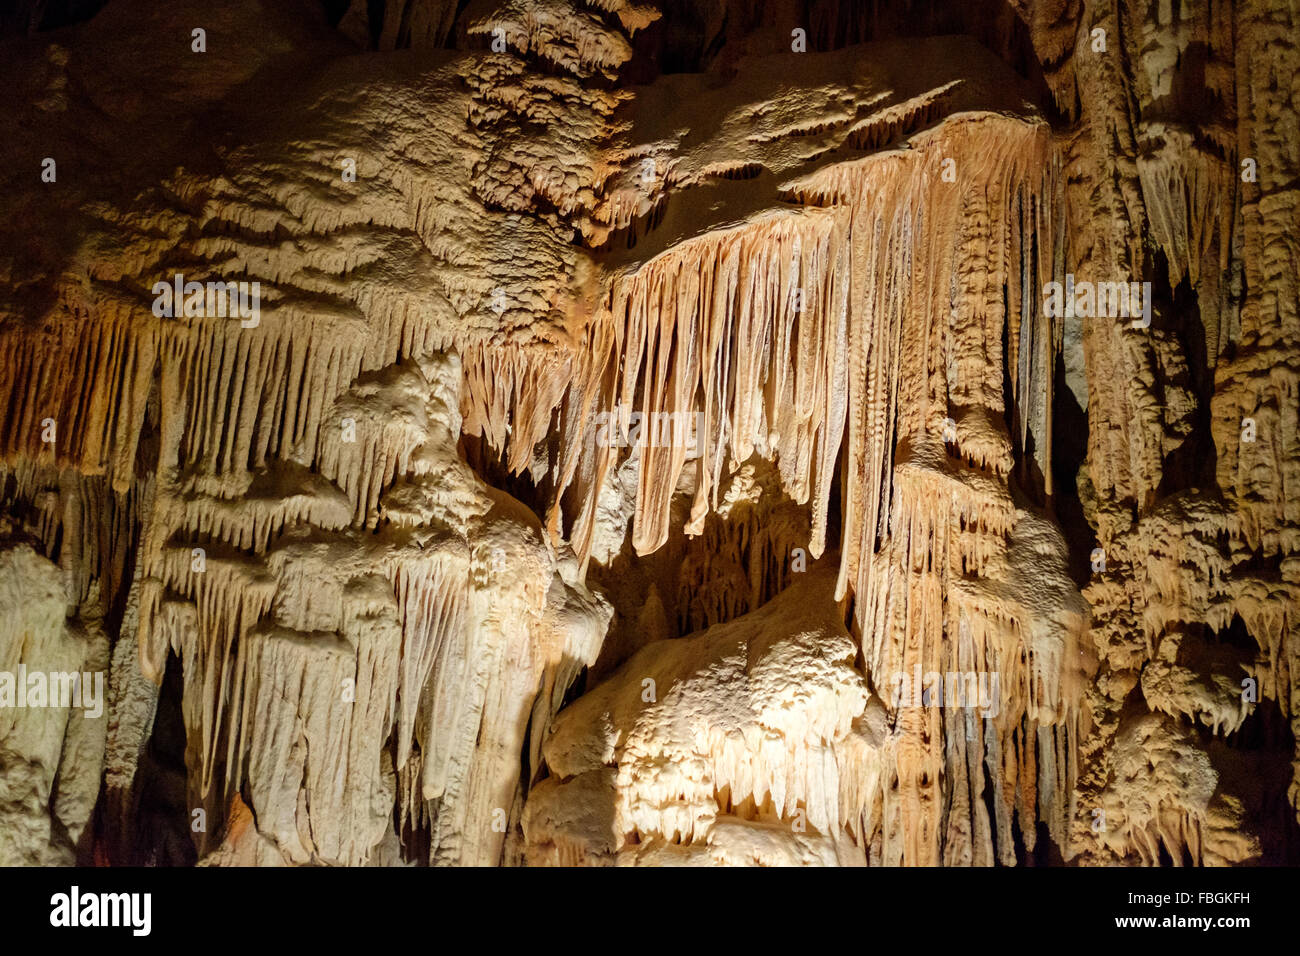 L'Aven d'Orgnac chambres souterraines et formations de cristaux dans l'Ardèche, France Banque D'Images